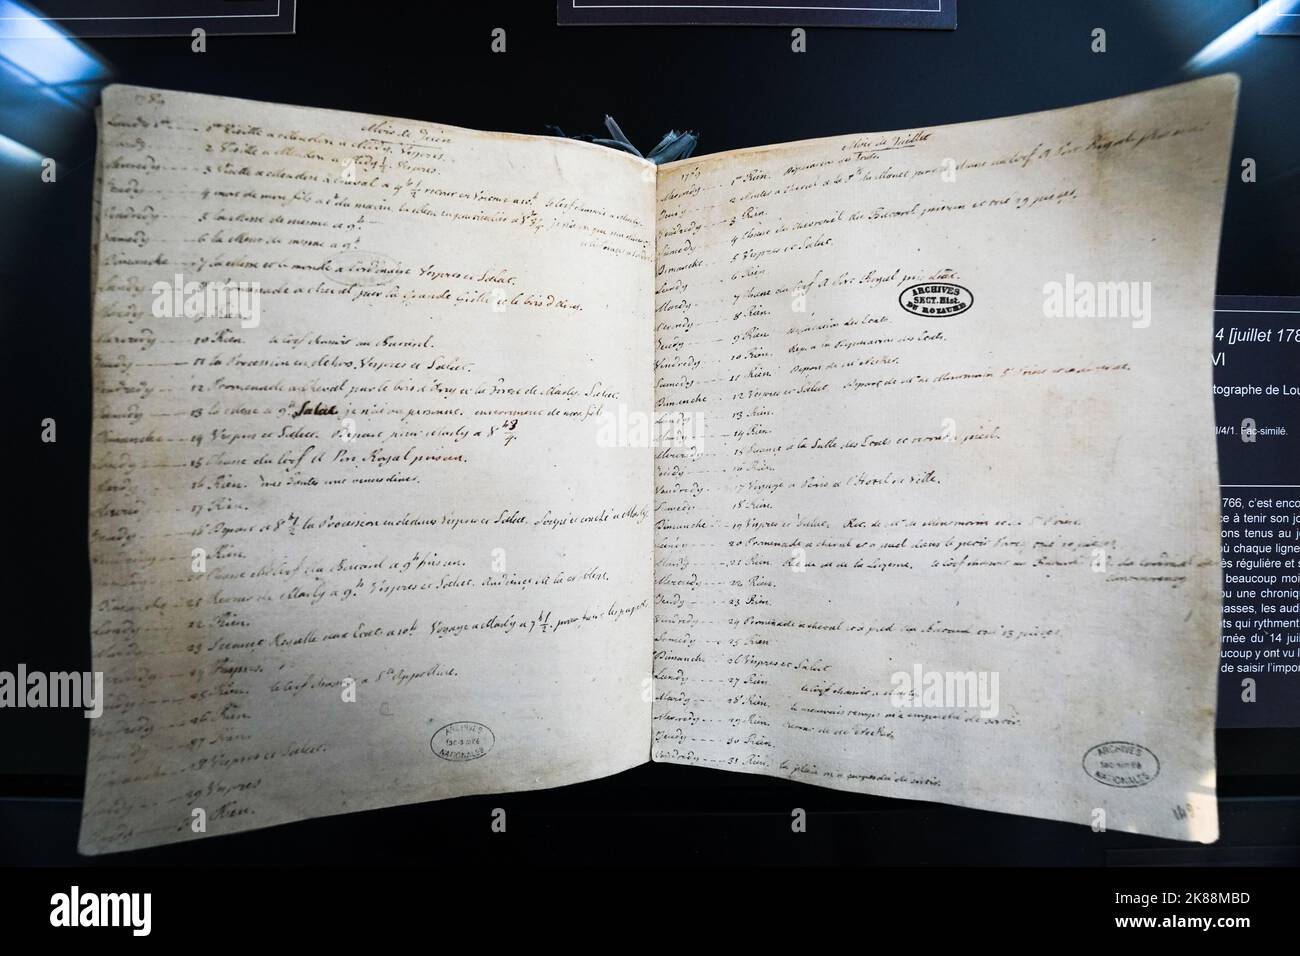 La pagina aperta del diario personale del re francese Luigi XVI. Alla data del 14 luglio 1789 scrisse 'Nothing' al Hôtel de Soubise Foto Stock